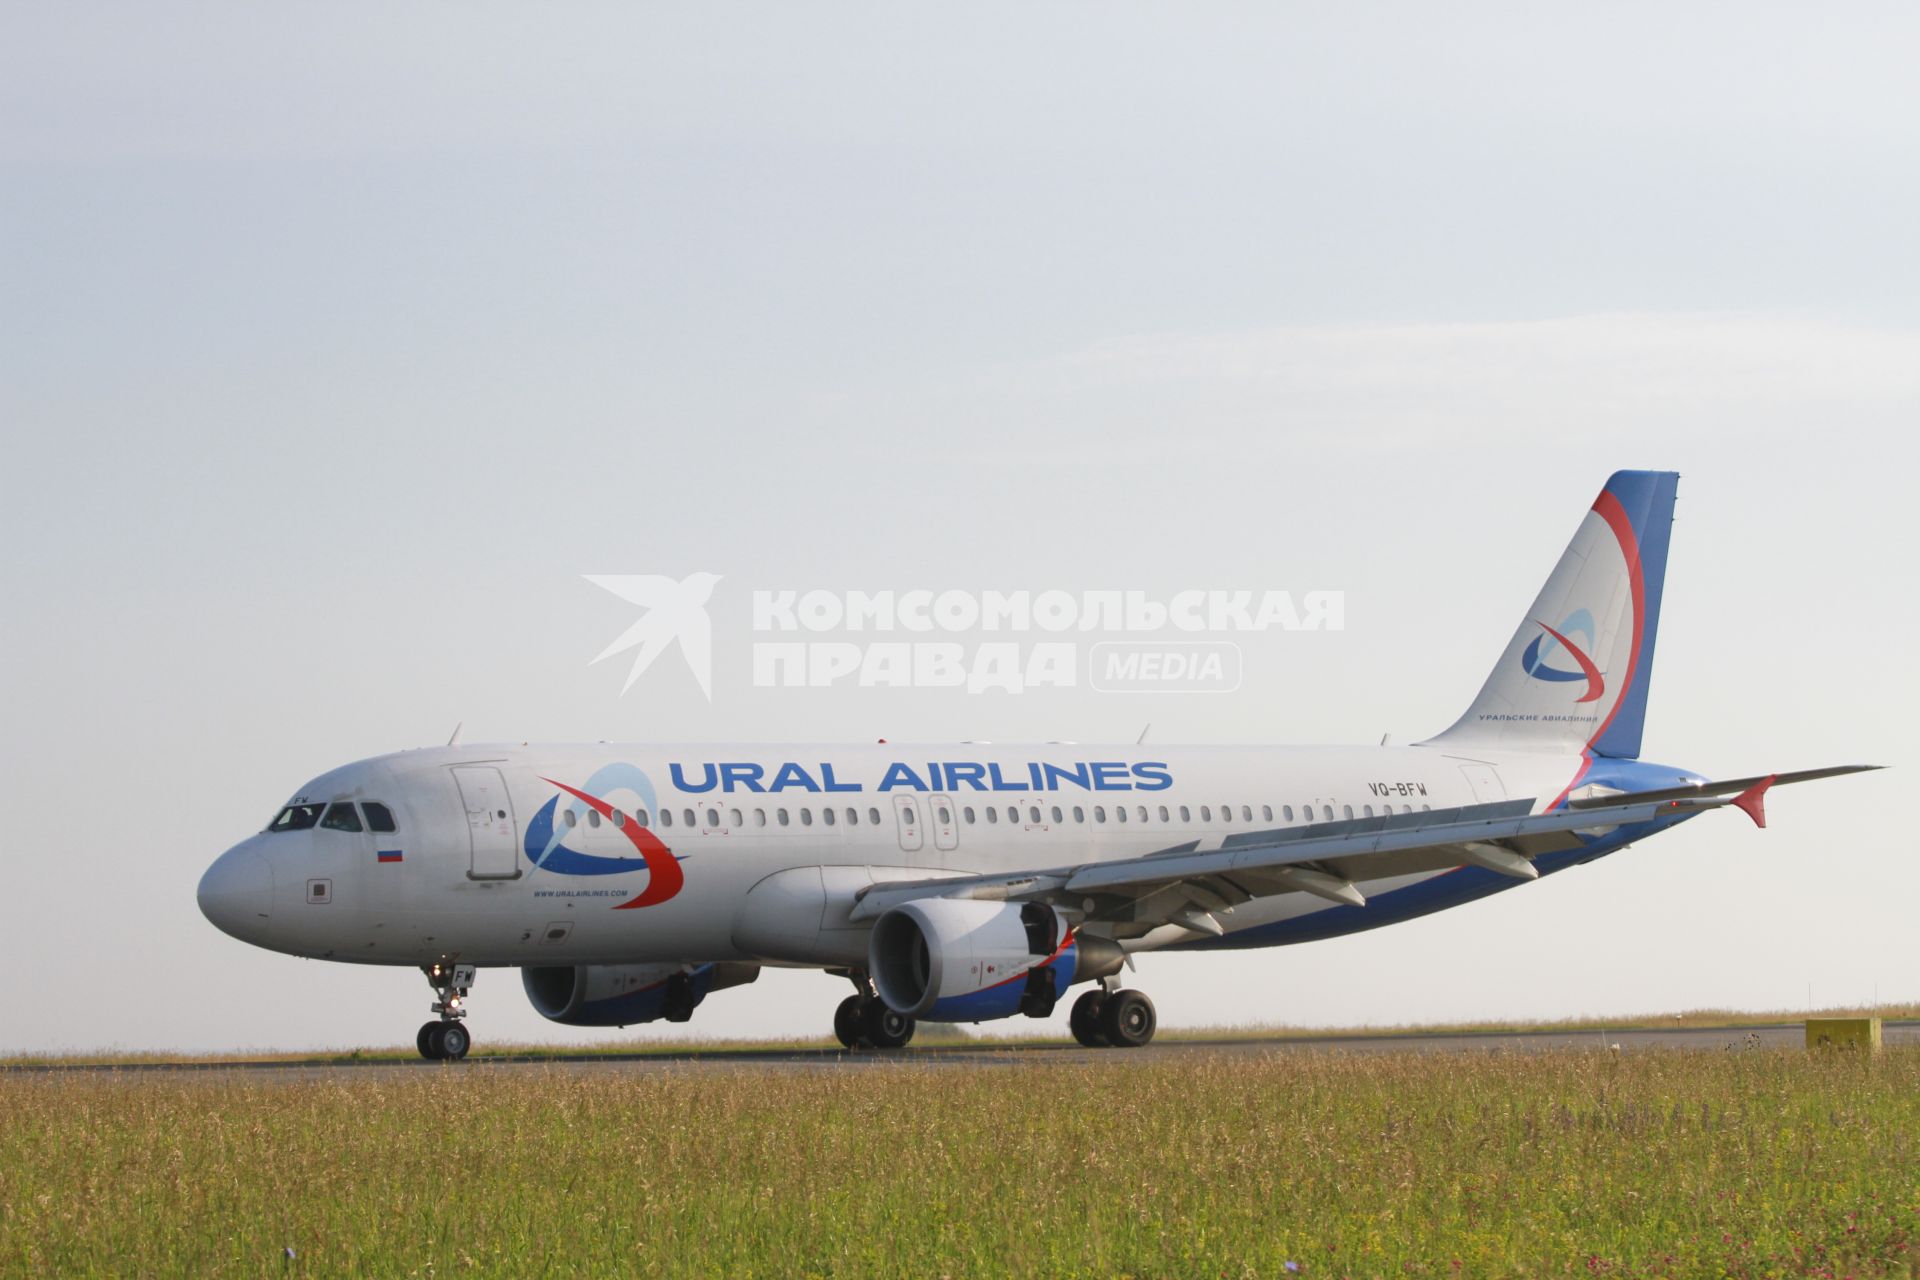 Барнаул. Самолет Airbus A320 российской авиакомпании Ural Airlines во время посадки в барнаульском аэропорту.